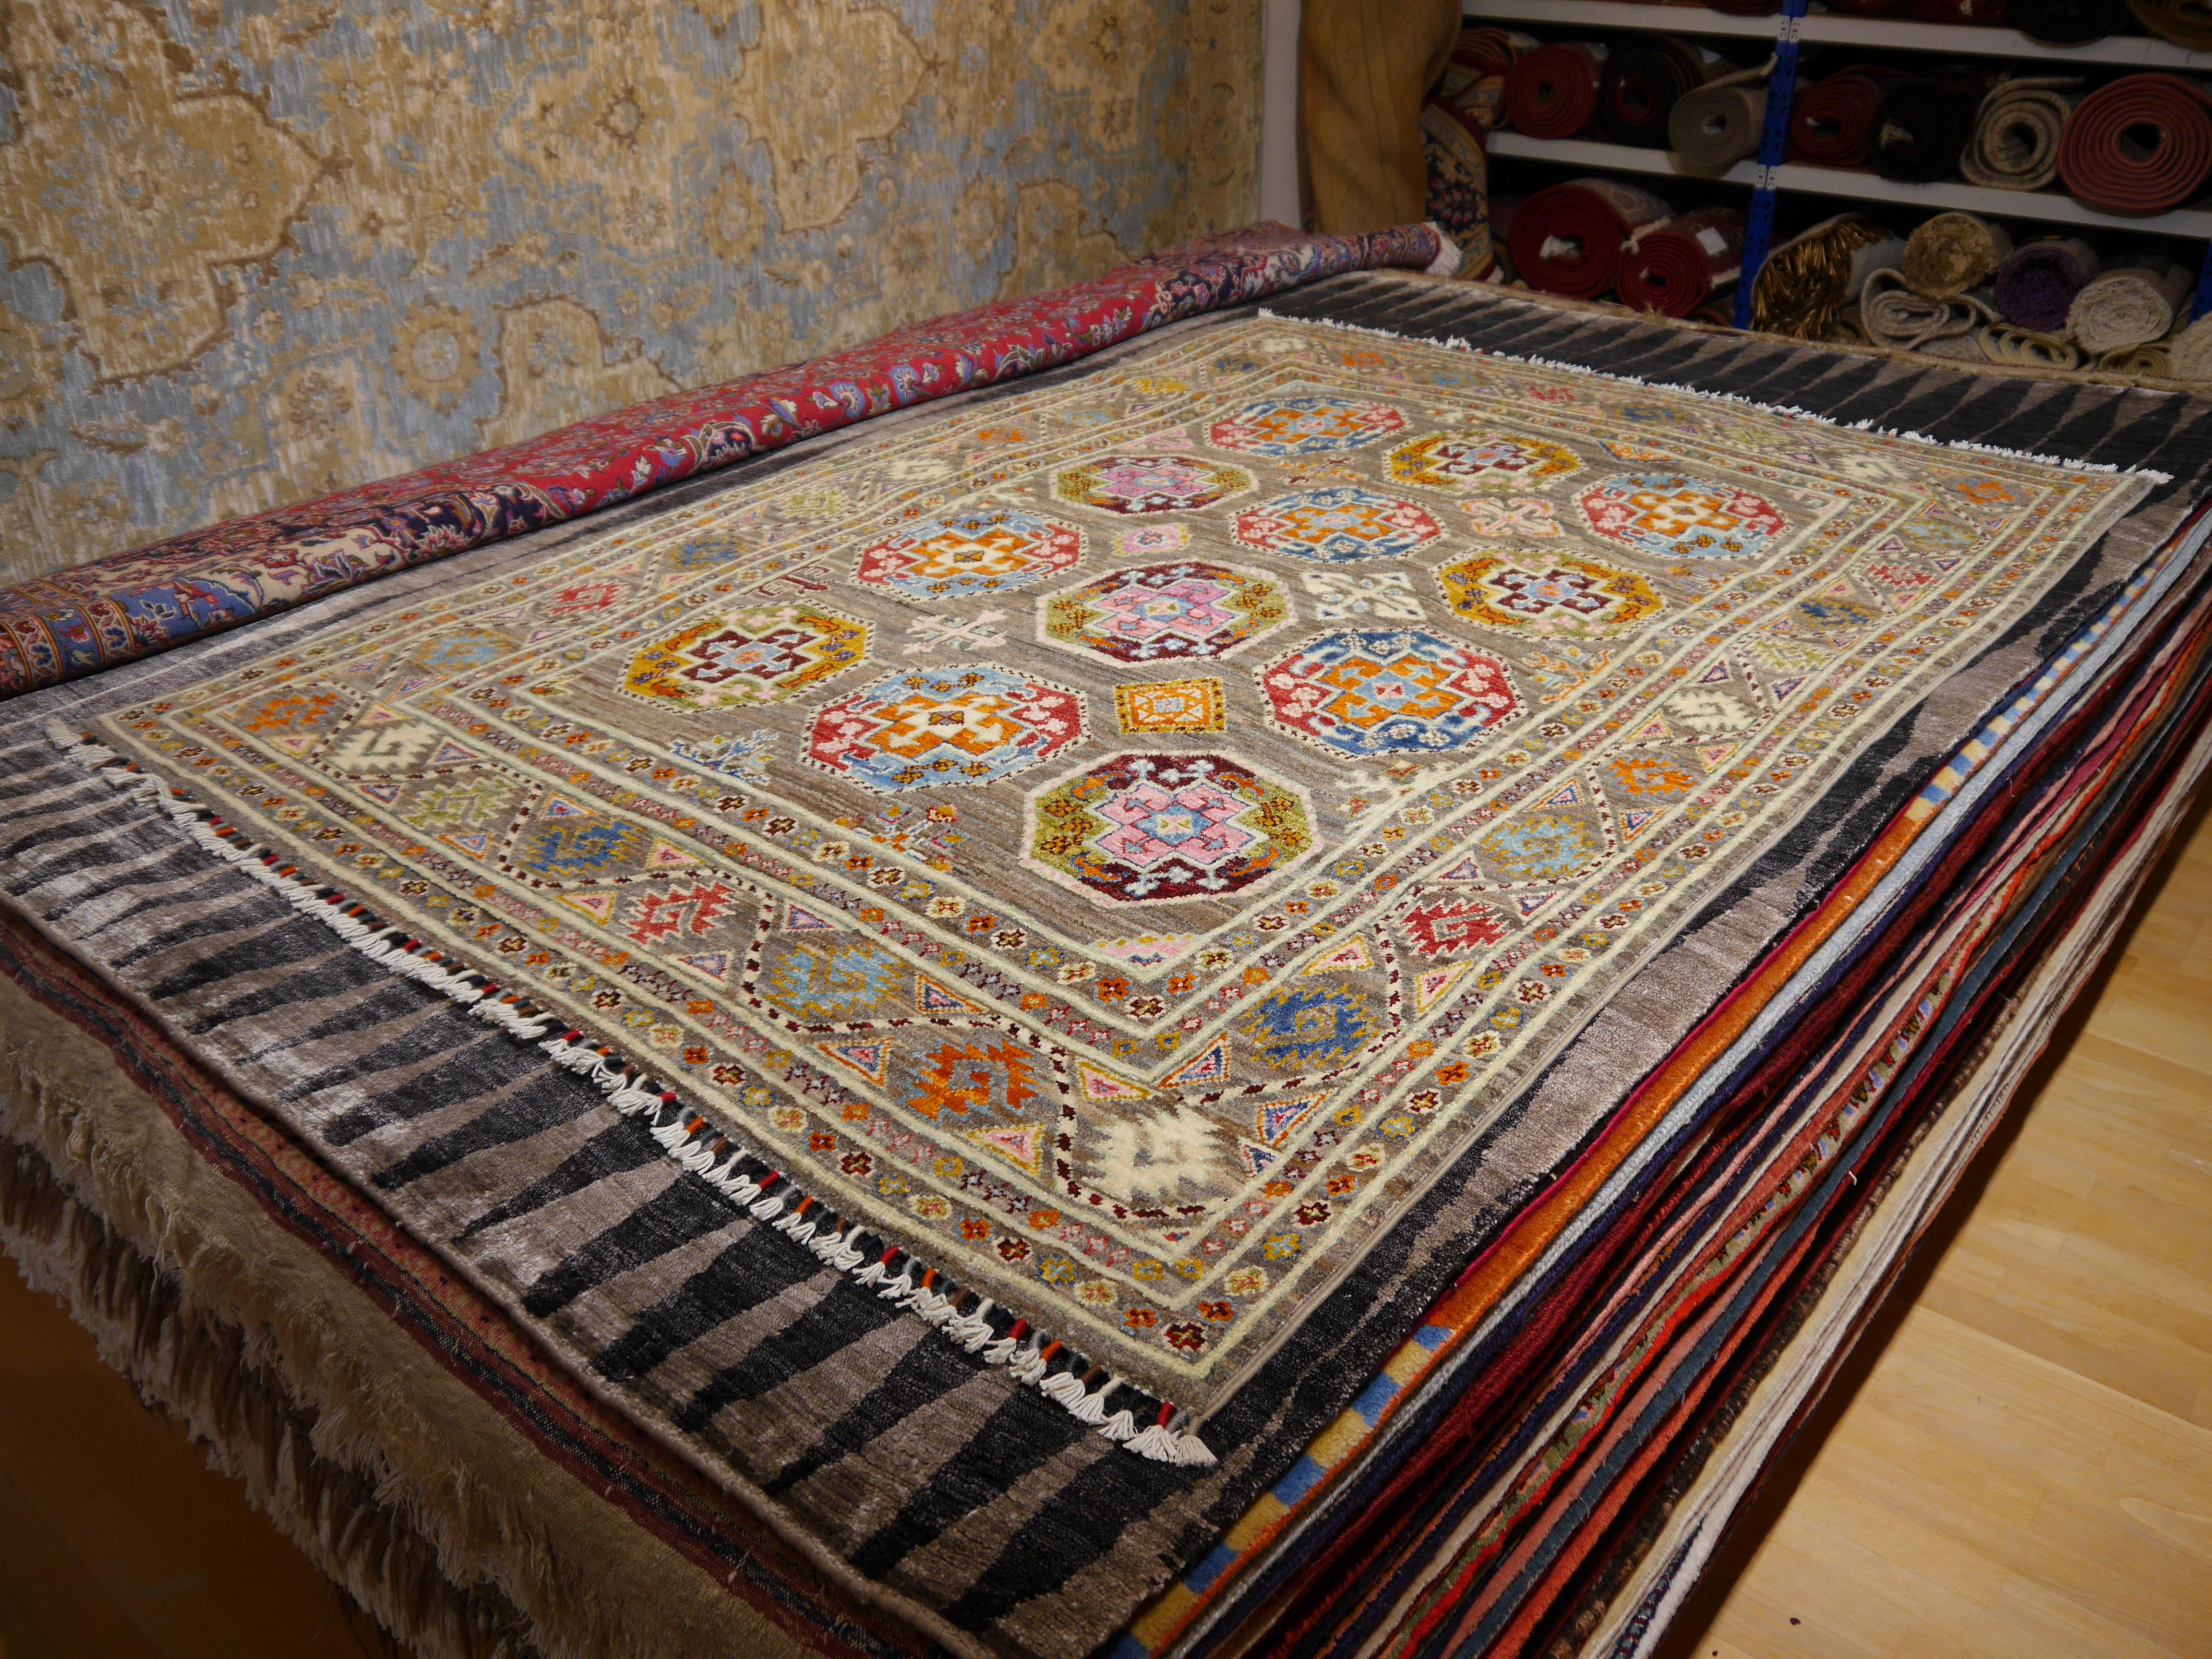 Ersari Teppich Arijana Afghan 6.6 x 4.6 ft handgeknüpfte Wolle
Ersari-Teppiche werden von turkmenischen Stämmen in Nordafghanistan und Usbekistan hergestellt.
Arijana- oder Ariana-Teppiche sind von hoher Qualität, haben Farbpigmente aus natürlichen